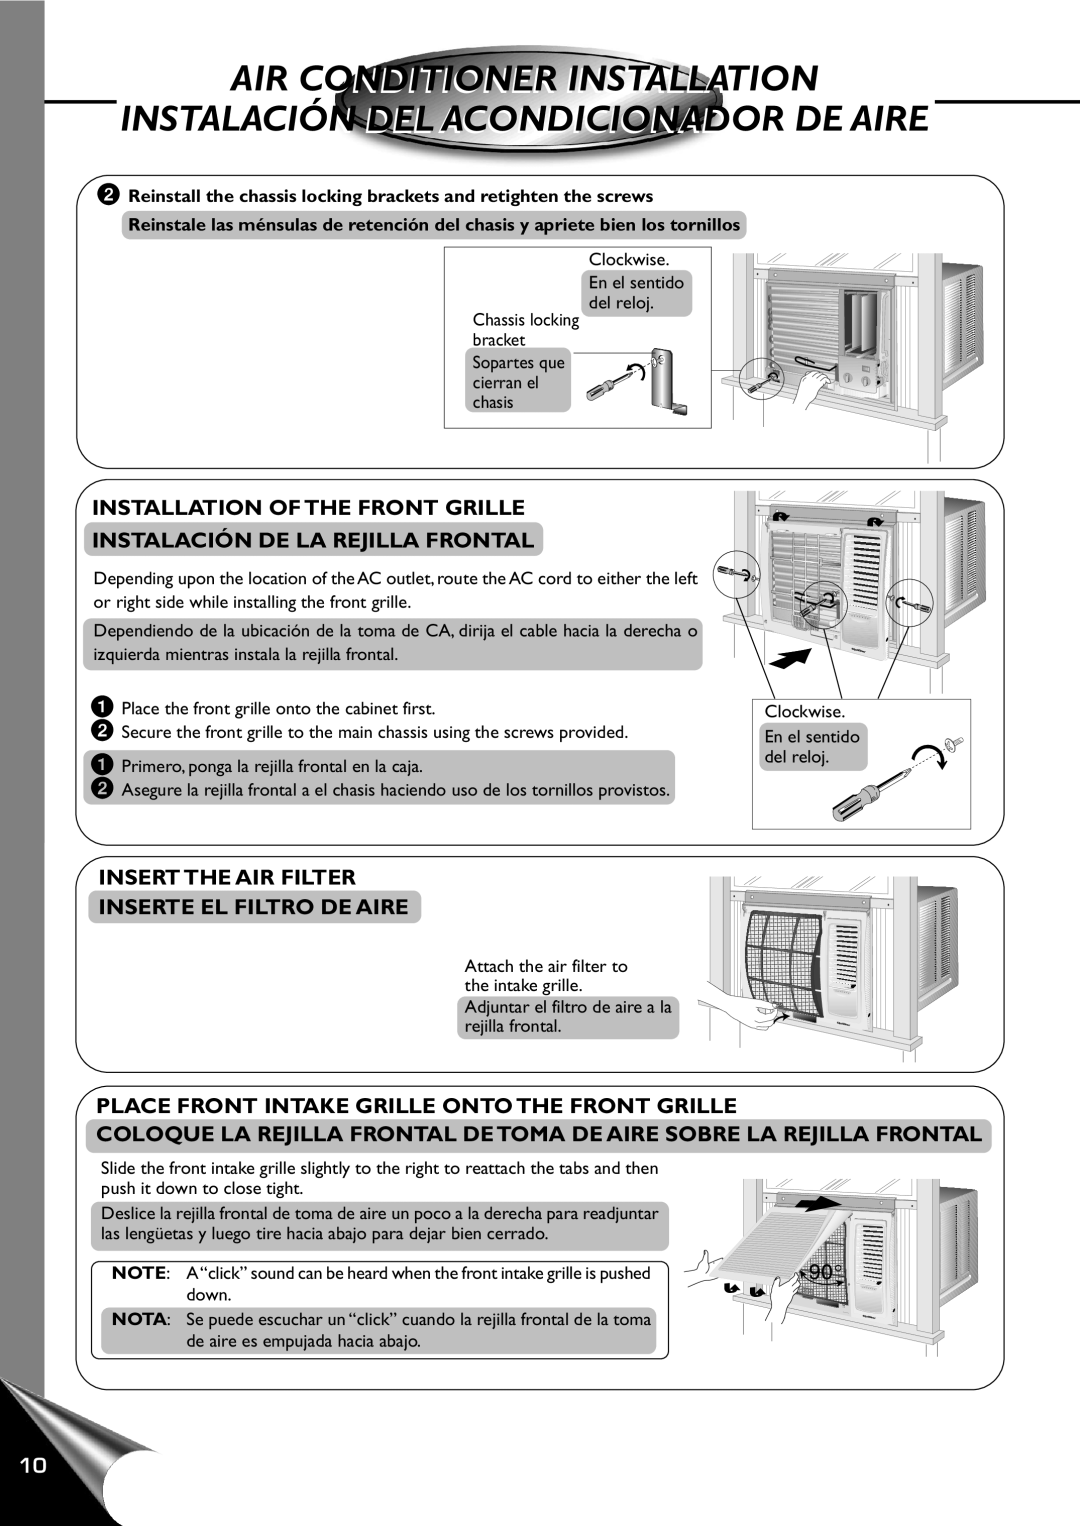 Quasar HQ-2101RH manual Installation Of The Front Grille, Instalación De La Rejilla Frontal, Air Conditioner Installation 